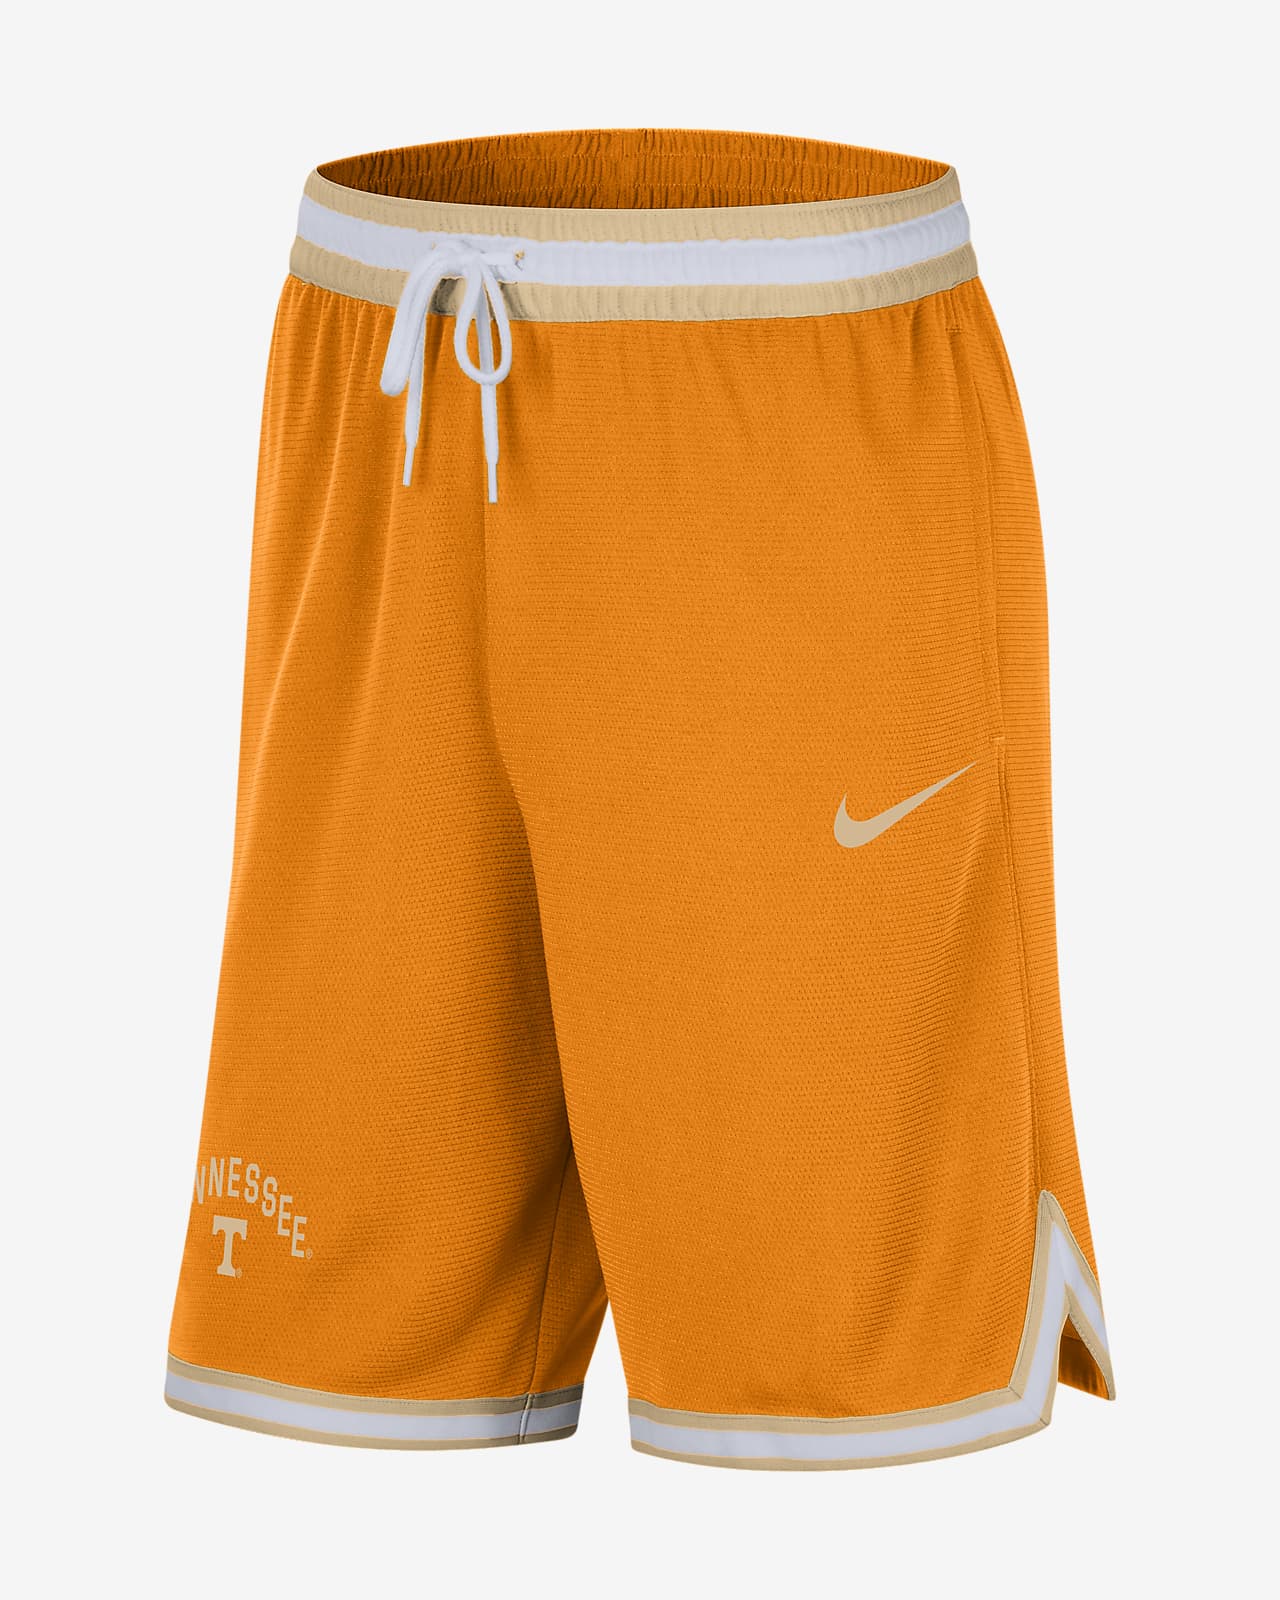 Orangetheory, Shorts, Orangetheory Fitness Nike Coach Shorts Mens M